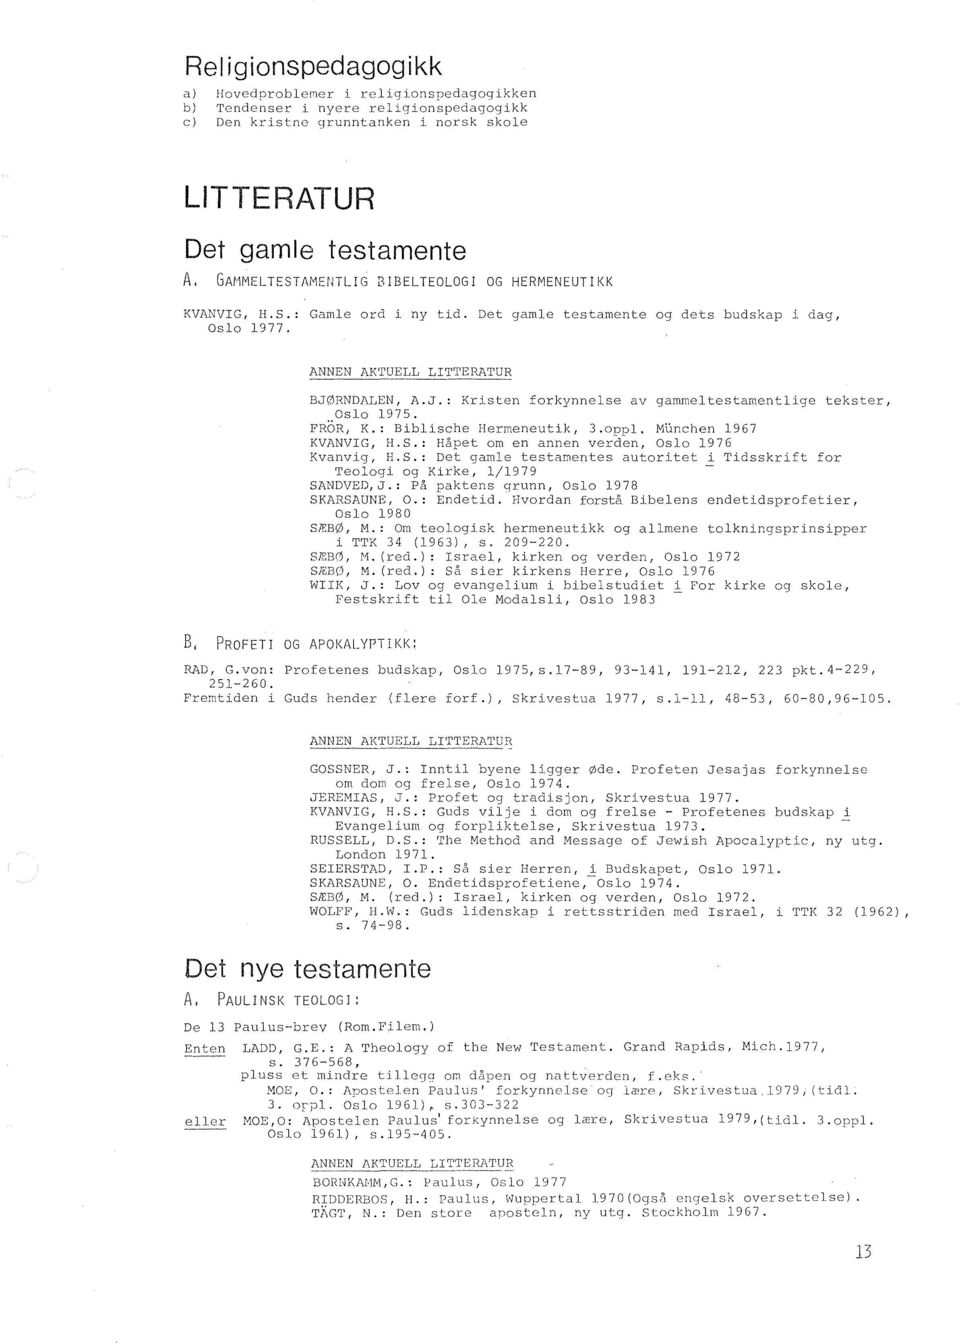 RNDALEN, A.J.: Kristen forkynnelse av gammeltestamentlige tekster, Oslo 1975. FR5R, K.: Biblische Hermeneutik, 3.oppl. MUnchen 1967 KVANVIG, ILS.